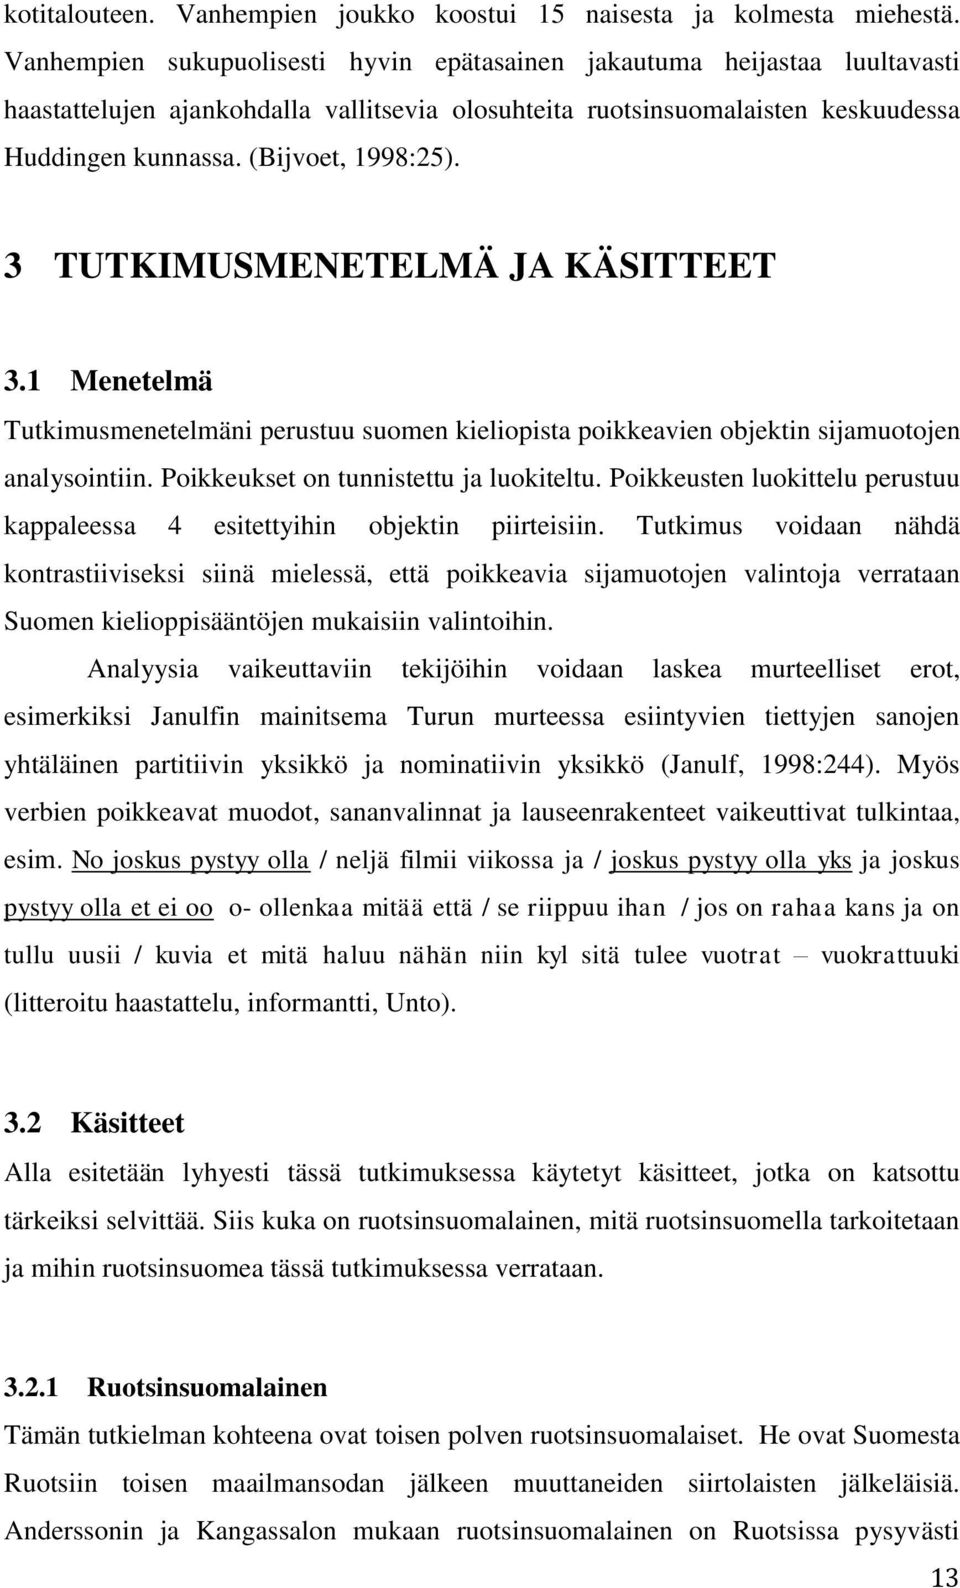 3 TUTKIMUSMENETELMÄ JA KÄSITTEET 3.1 Menetelmä Tutkimusmenetelmäni perustuu suomen kieliopista poikkeavien objektin sijamuotojen analysointiin. Poikkeukset on tunnistettu ja luokiteltu.